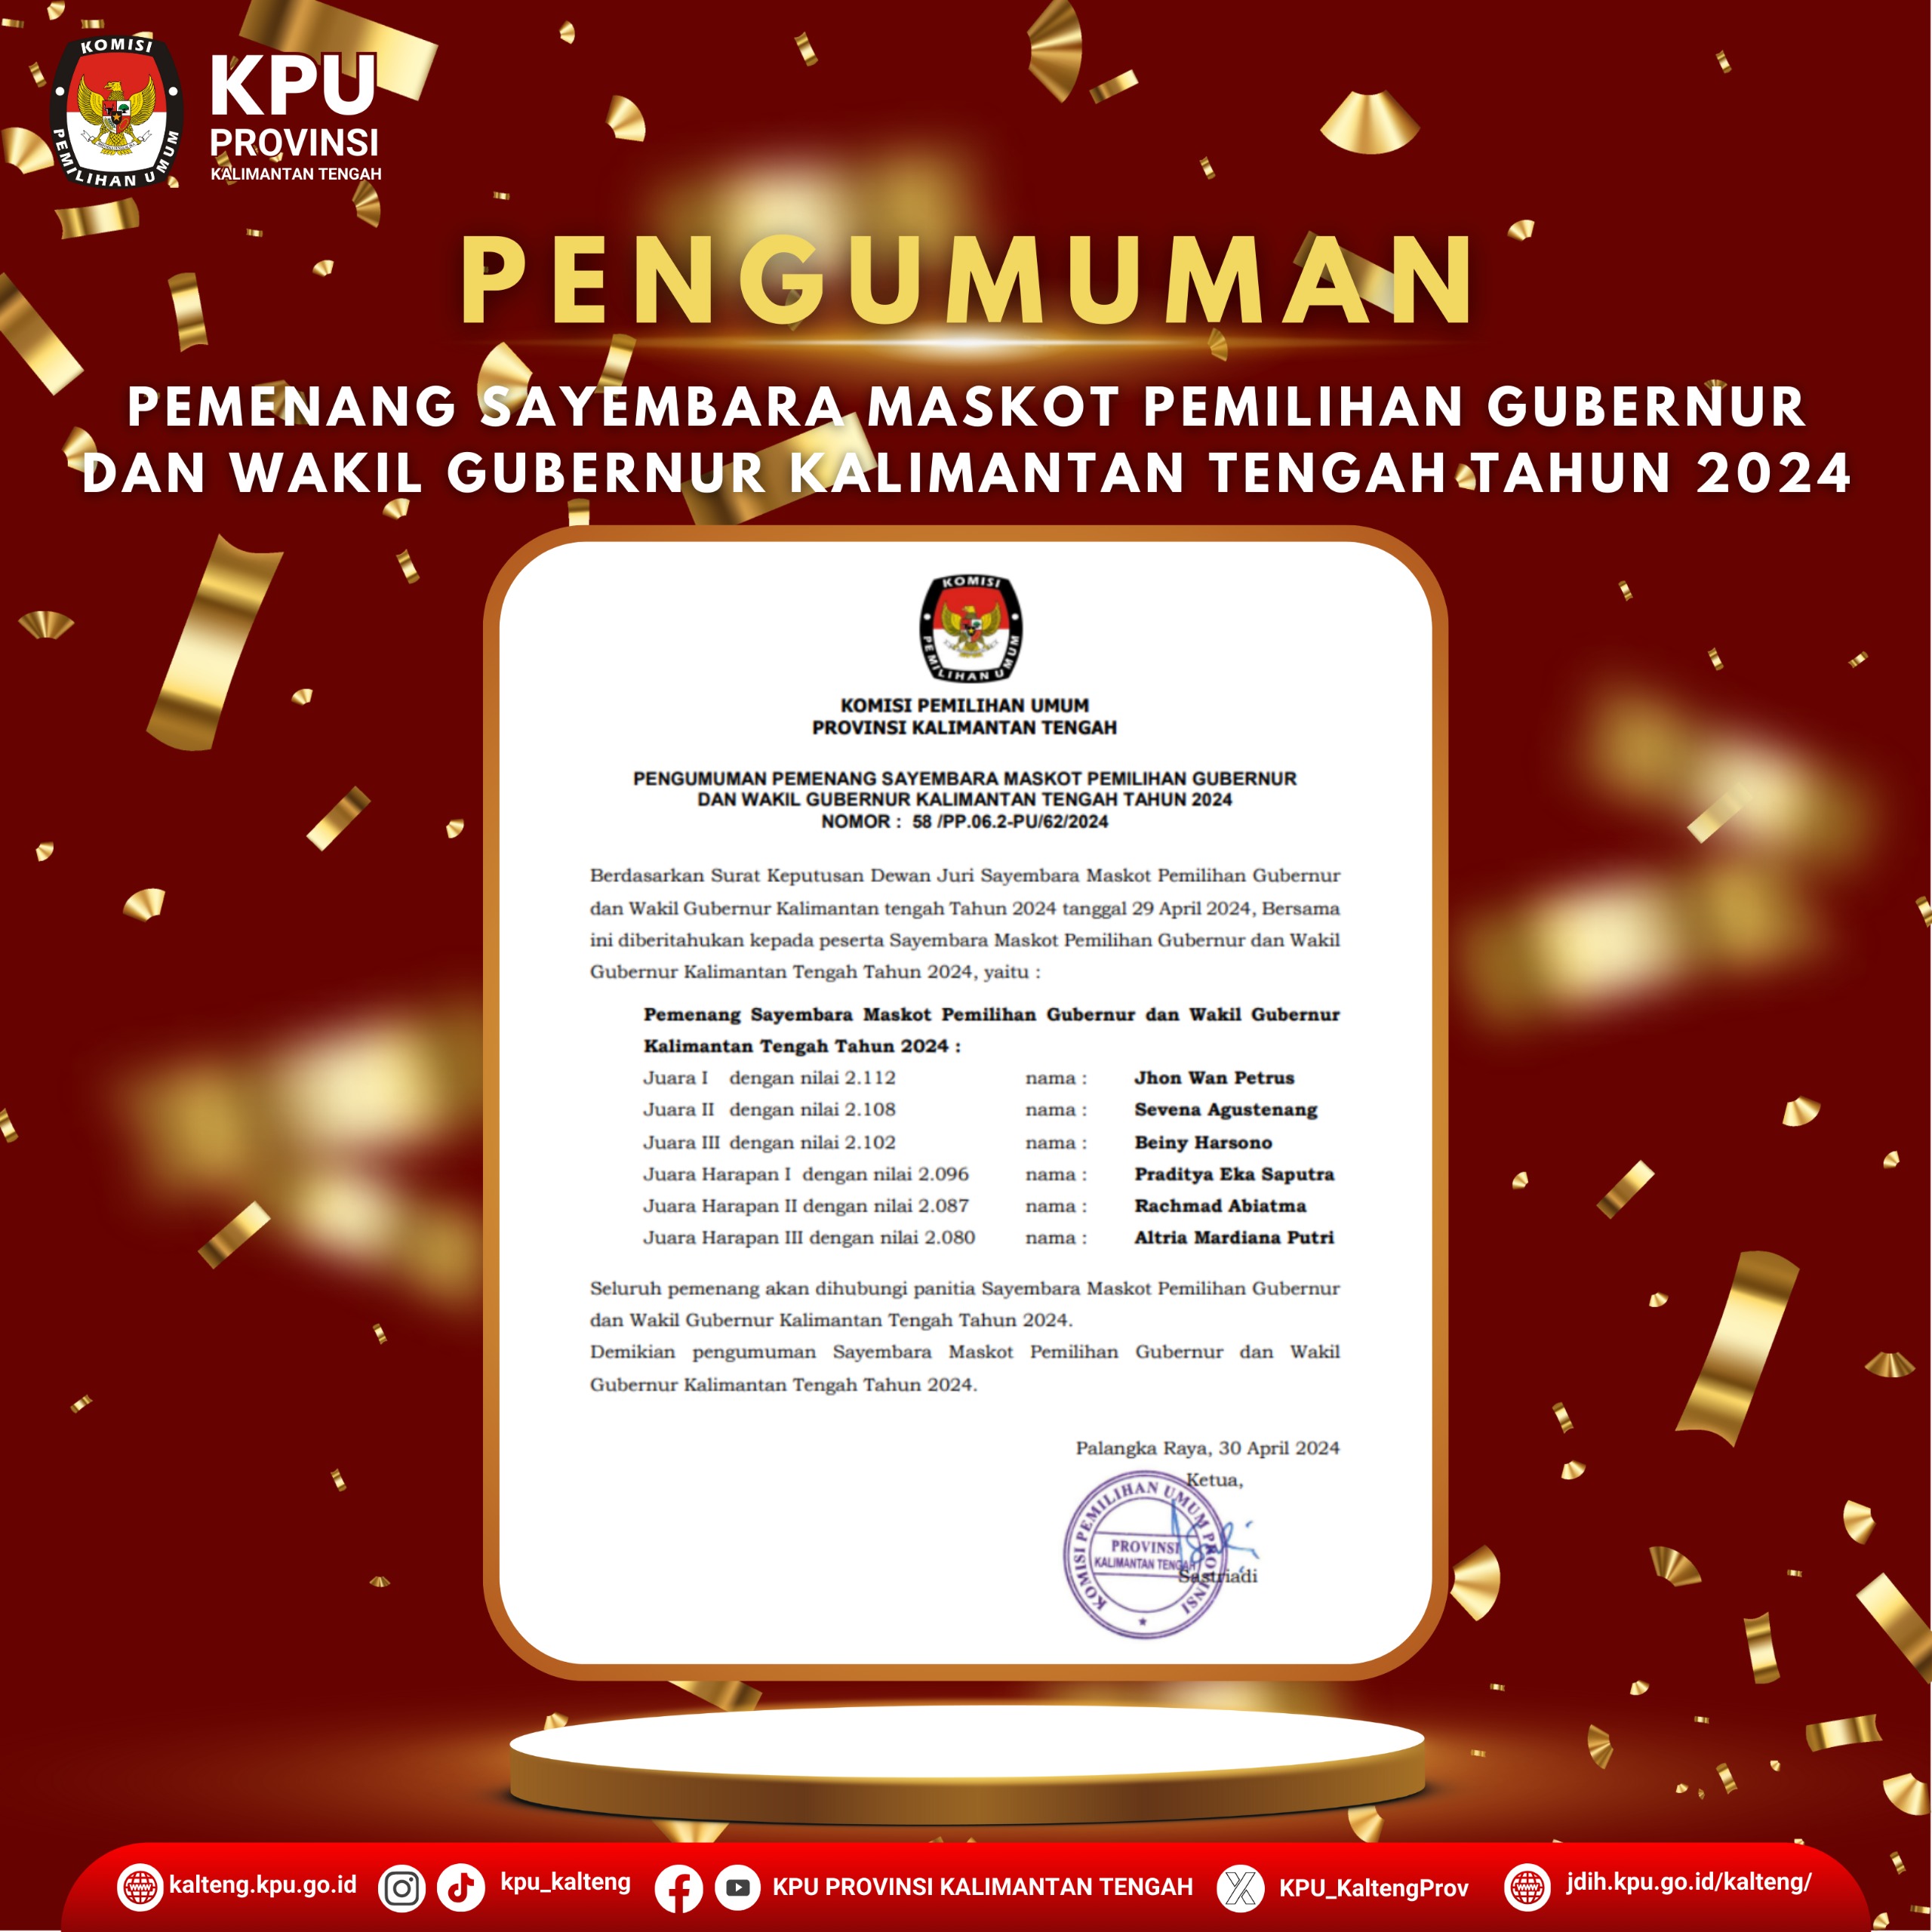 Pengumuman Pemenang Sayembara Maskot Pilkada Kalimantan Tengah Tahun 2024